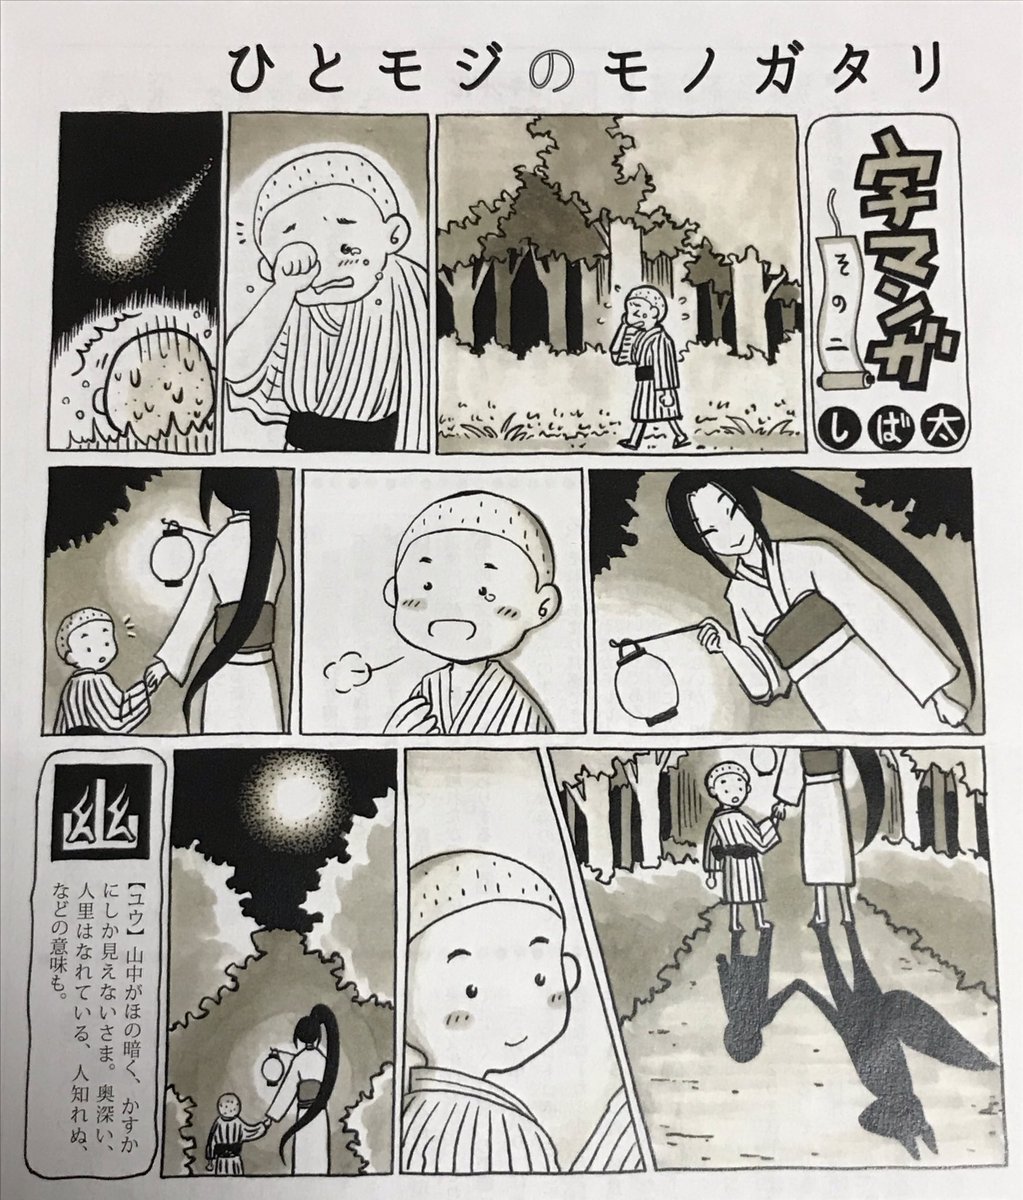 【創作漫画】漢字一文字からイメージした物語を、1ページのサイレント漫画にした「字マンガ」シリーズです

 #画像4枚上げて200RT目指す 